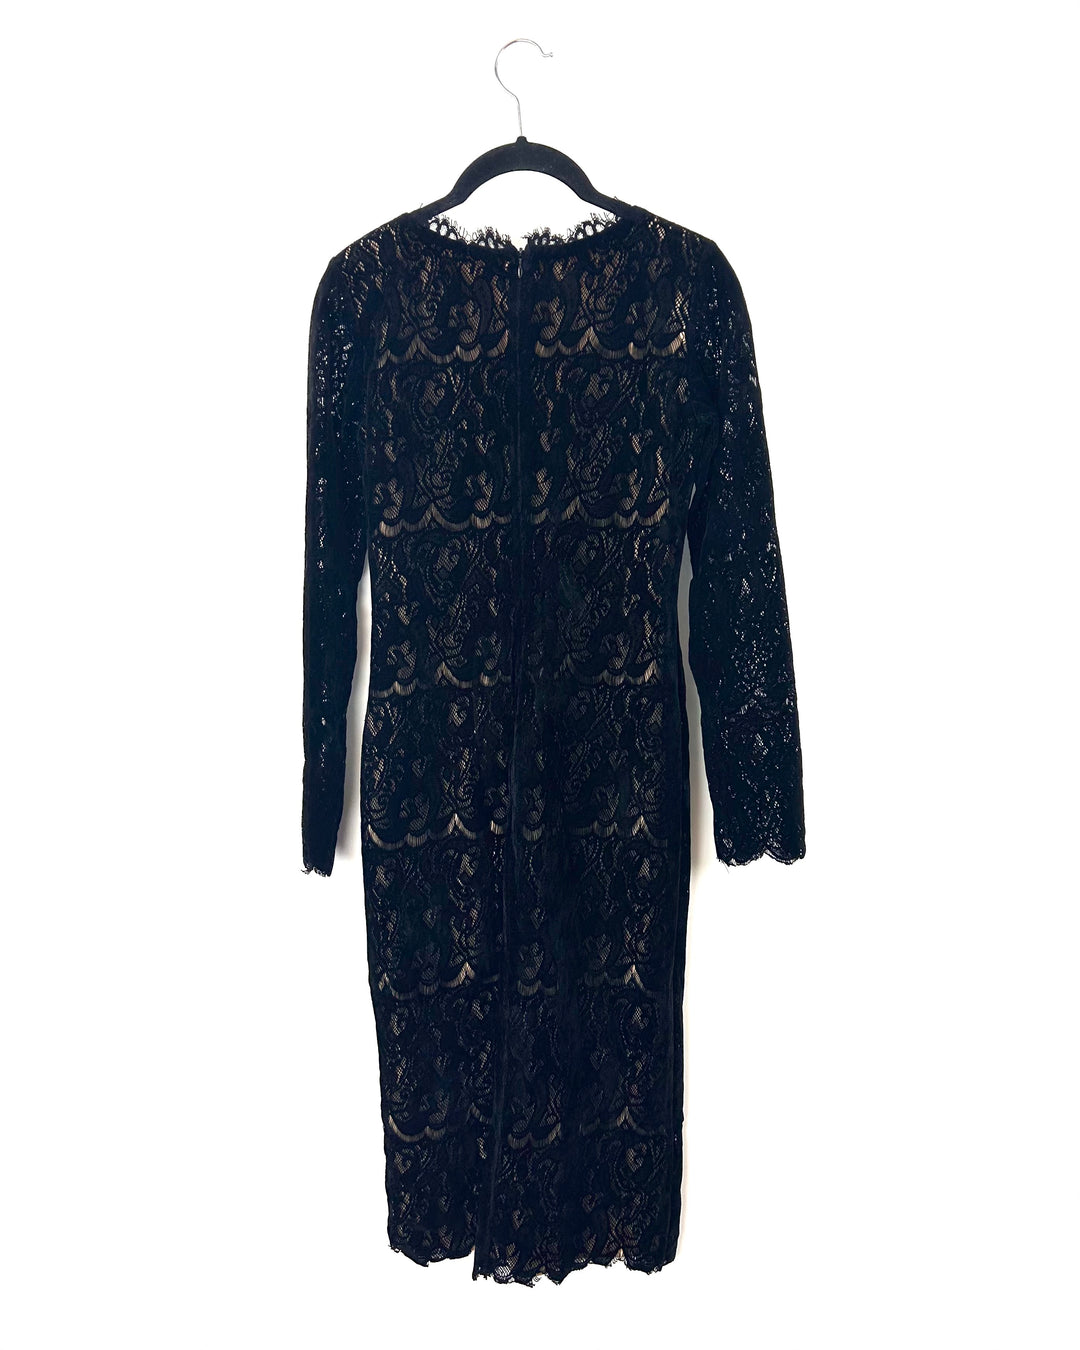 Black Long Sleeve Velvet Lace Dress - Small